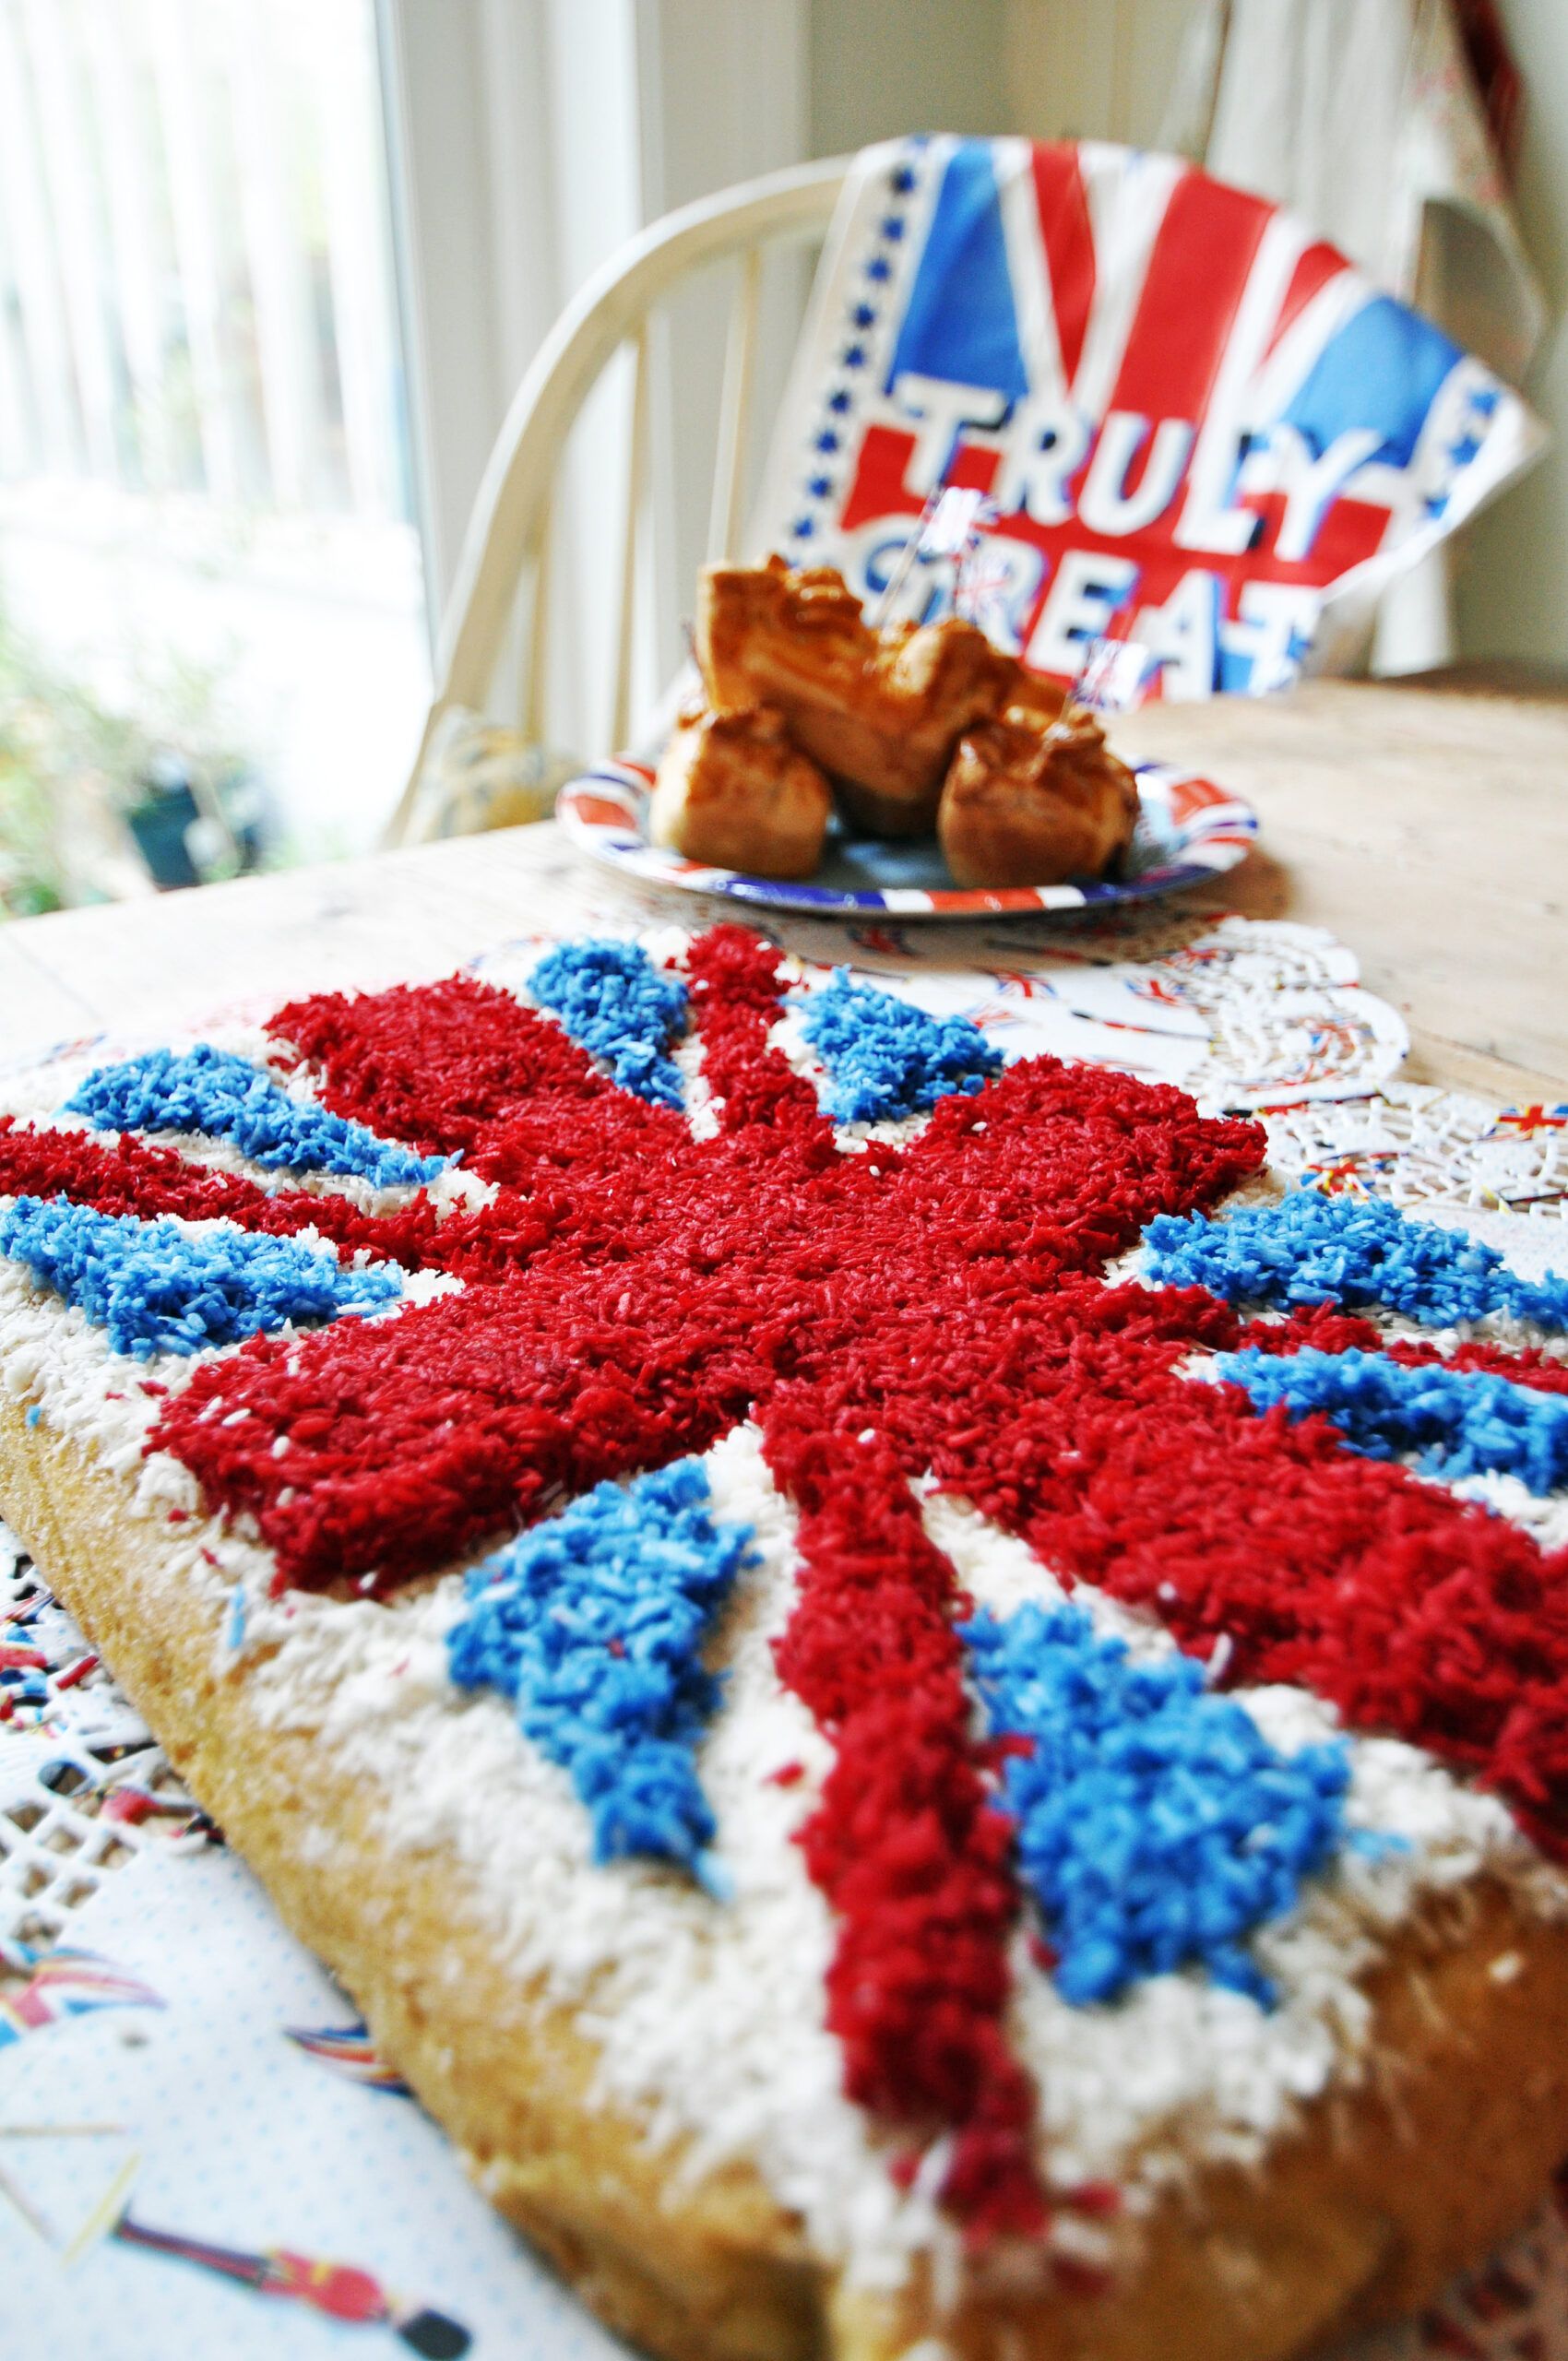 Union Jack cake by Nadia Sawalha